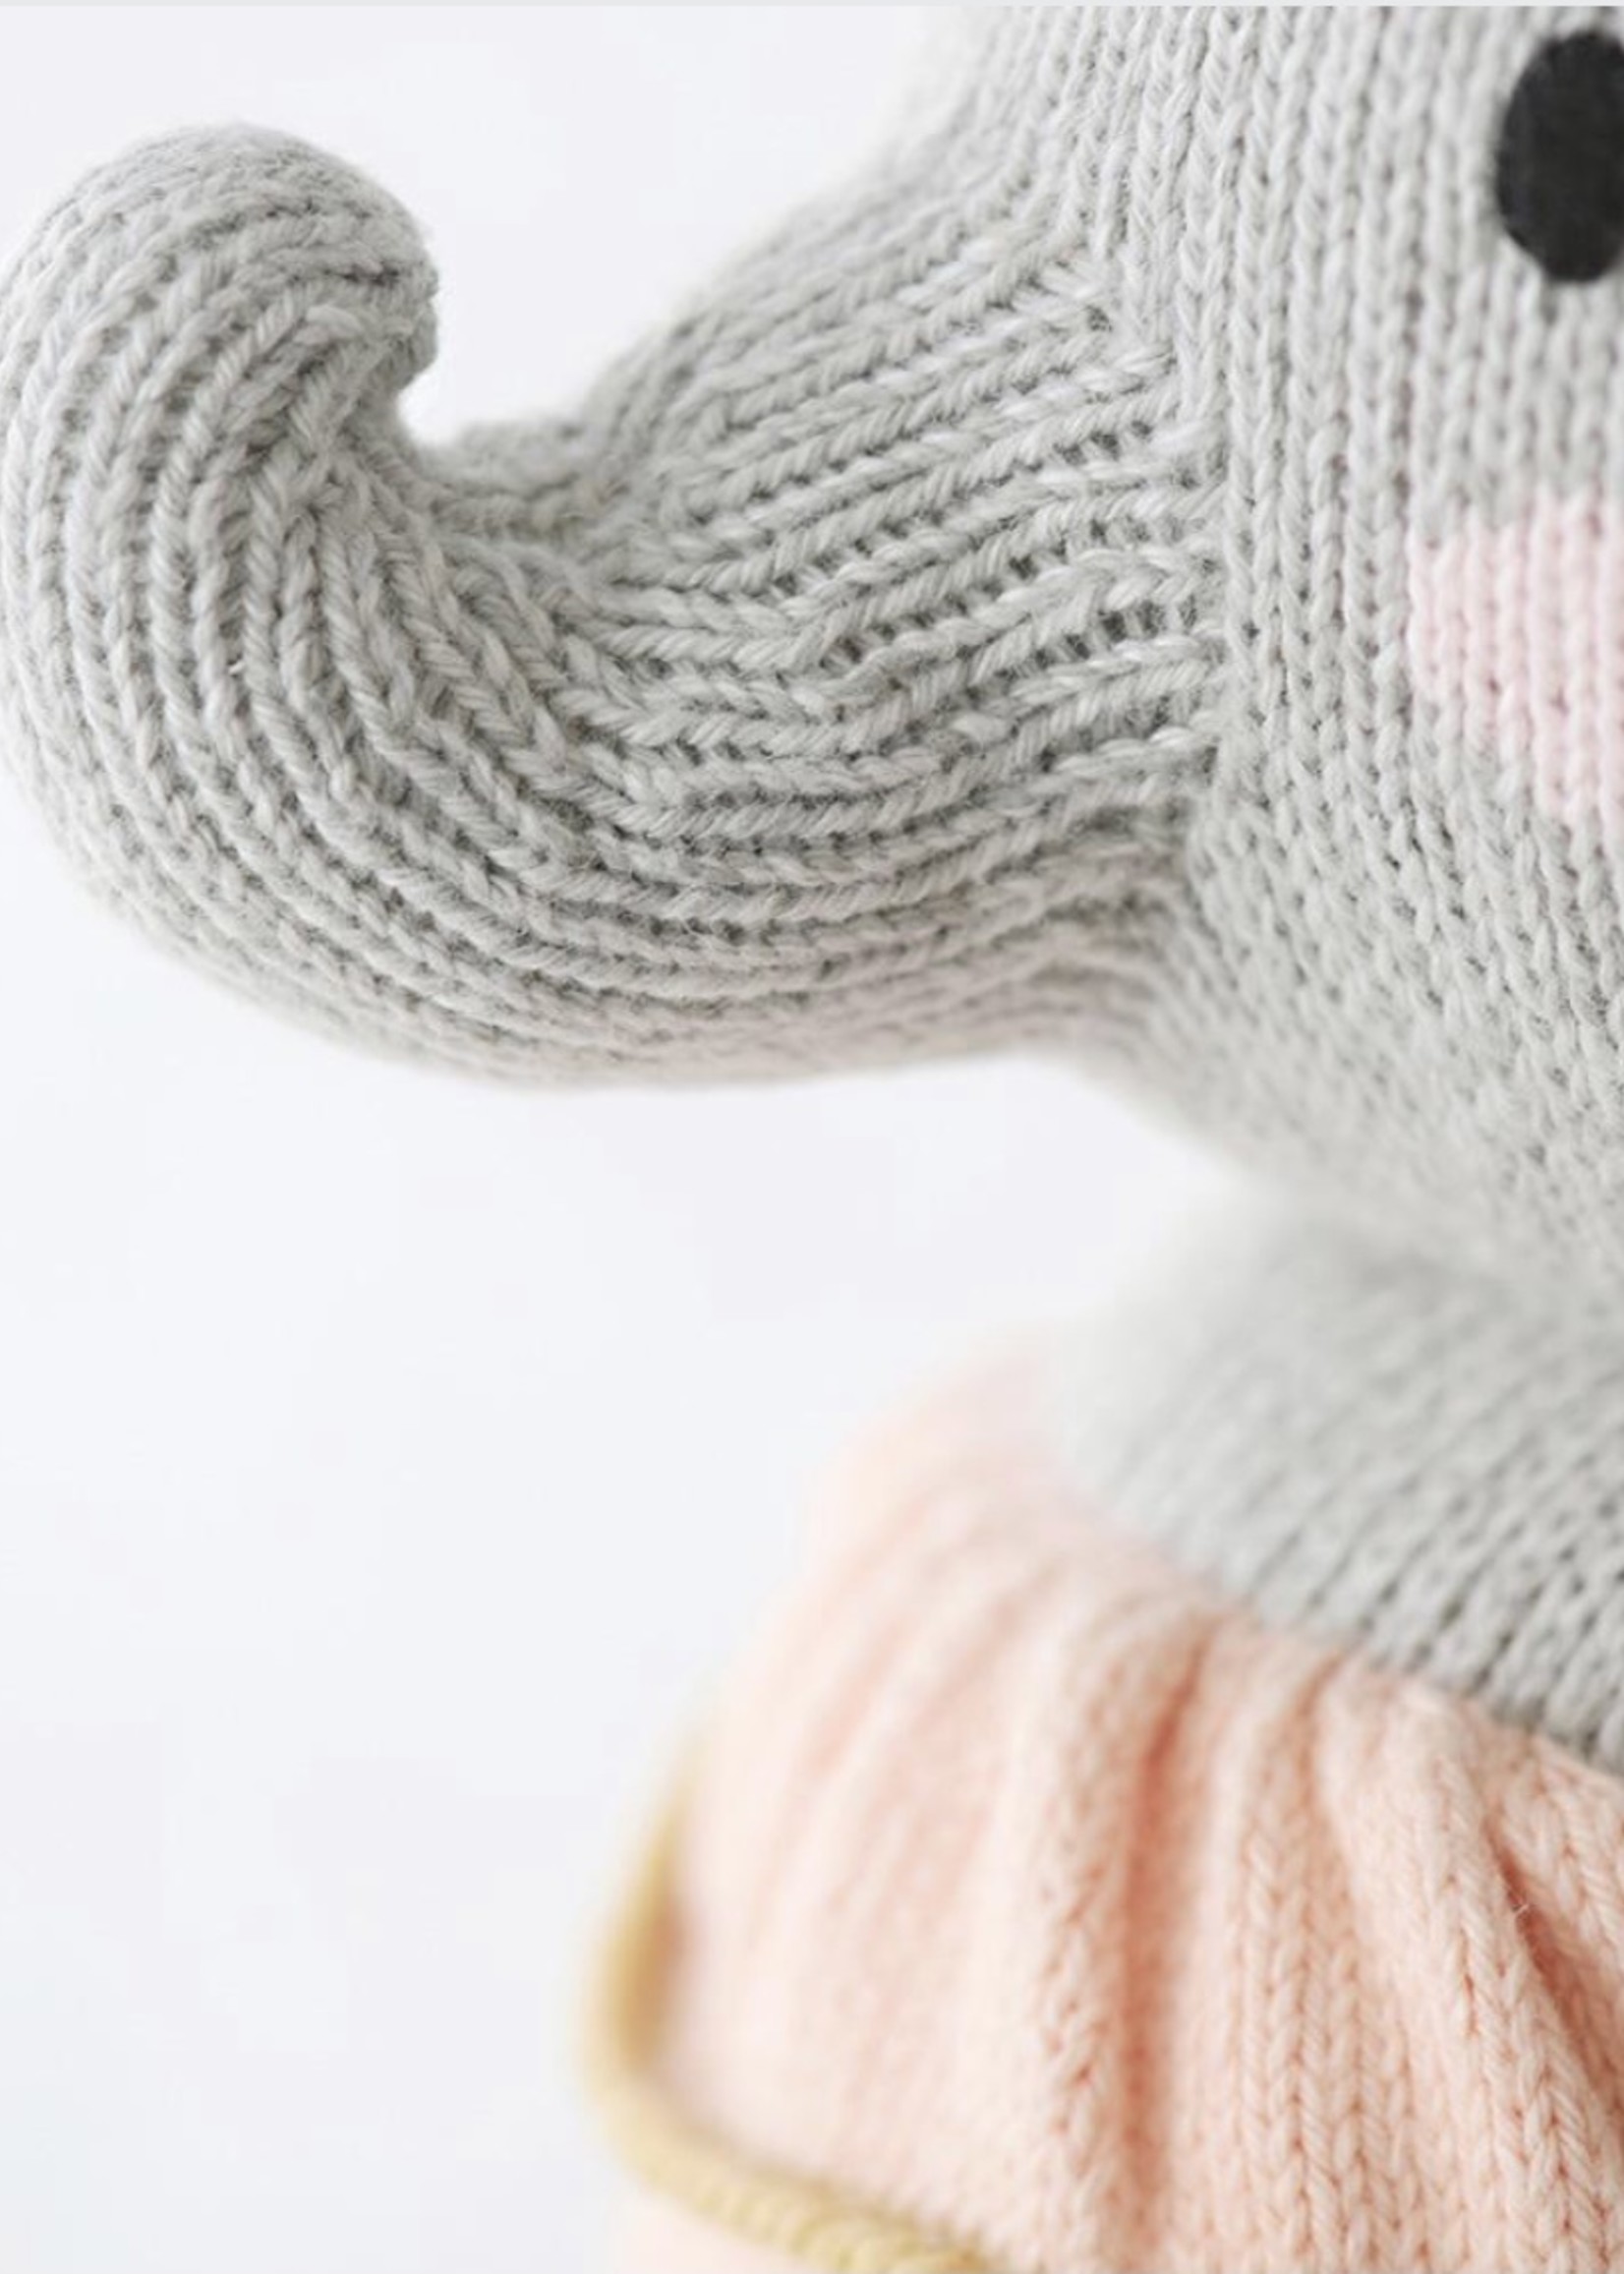 cuddle + kind Big Elephant Knit Doll ELOISE